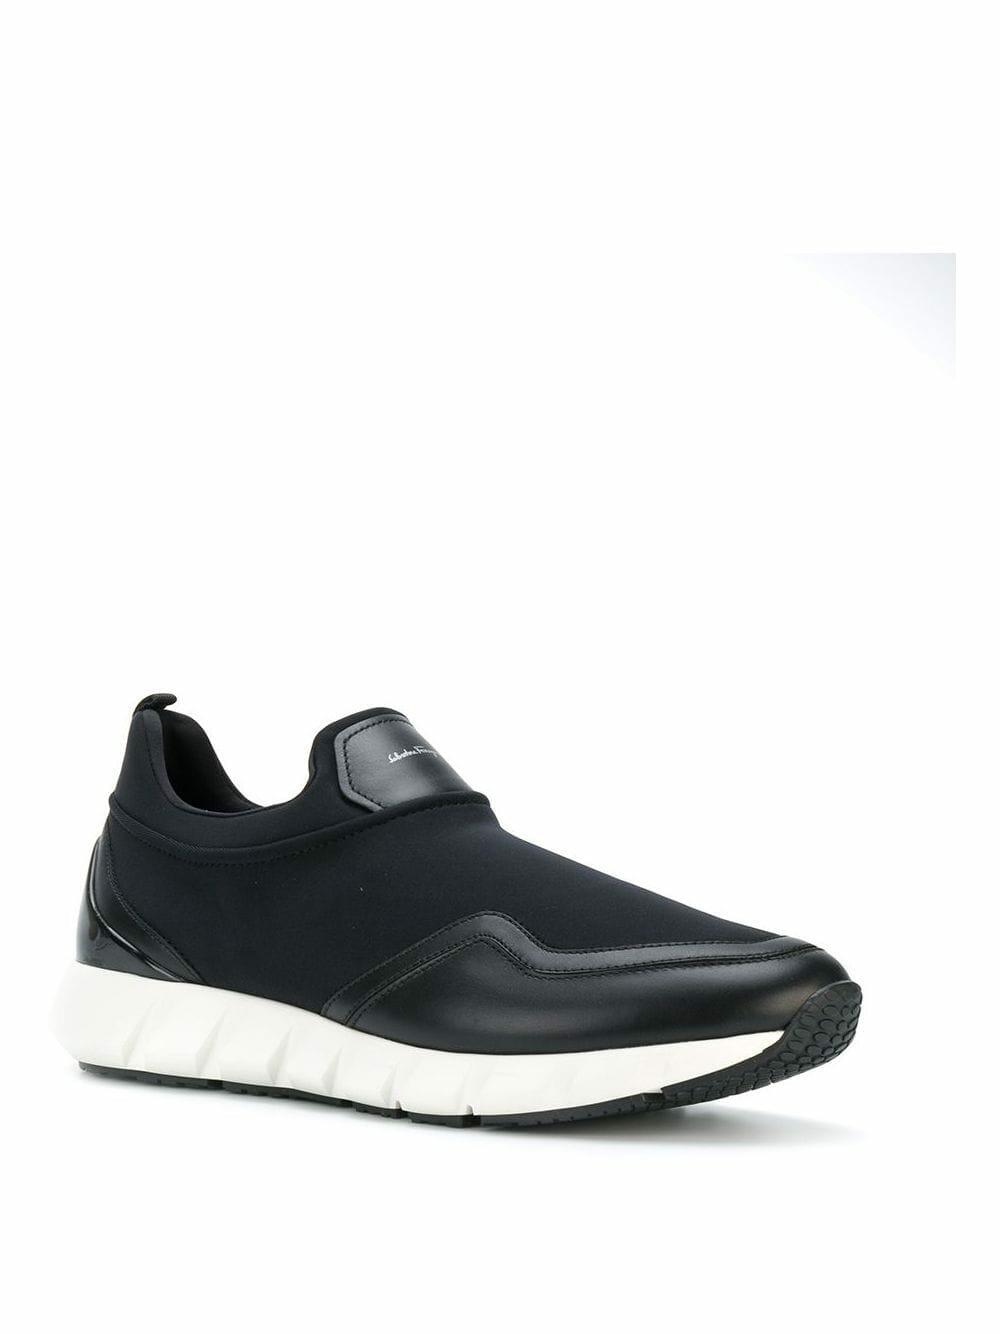 Salvatore Ferragamo - Black Leather & Fabric Sneaker